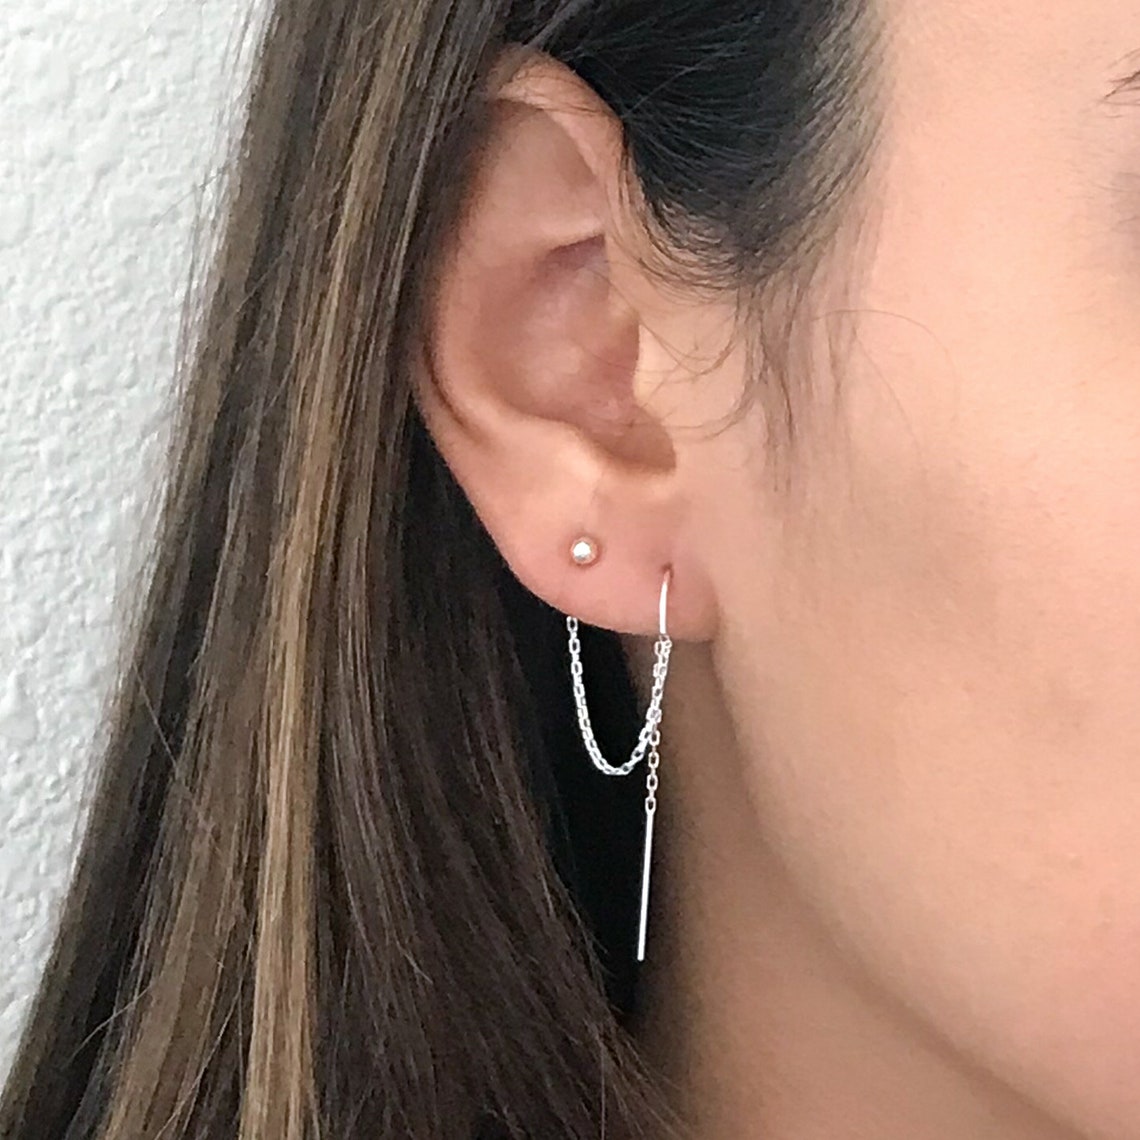 Small Micro Hoop Earrings - Rose Gold